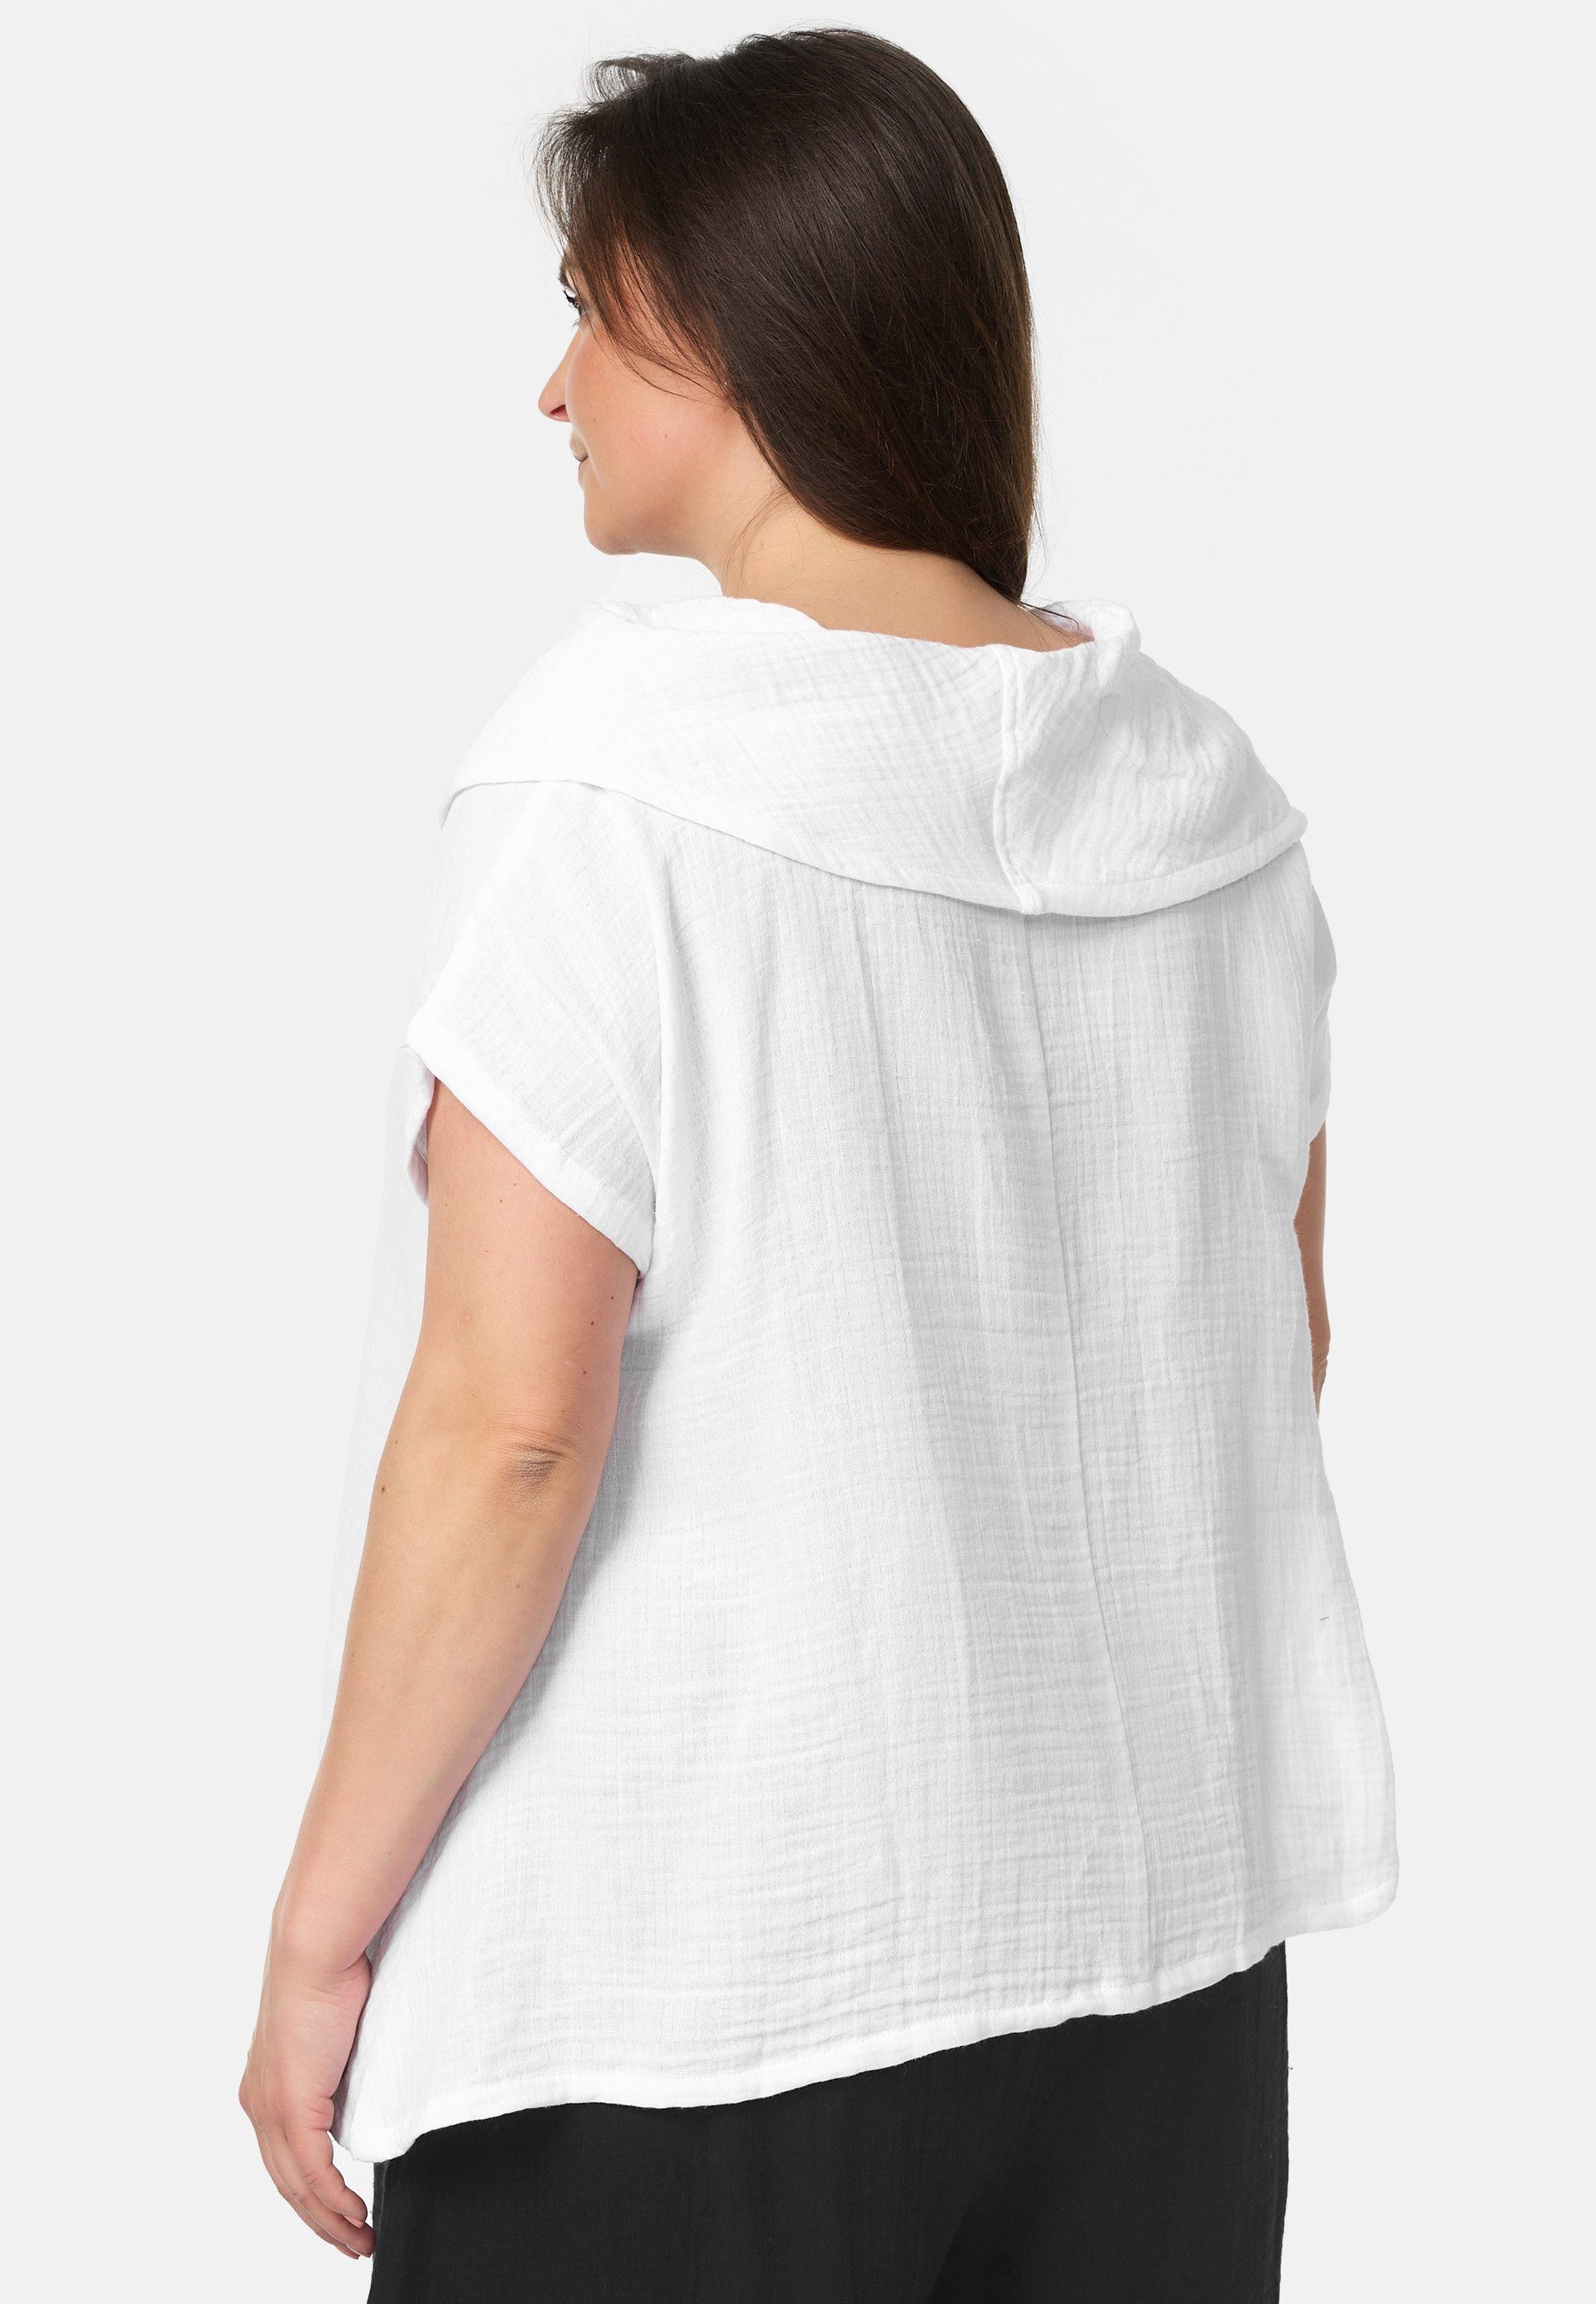 Kekoo Tunikashirt T-Shirt Weiß Schnitt Asymmetrischer 'Natura Kollektion mit Wasserfallkragen